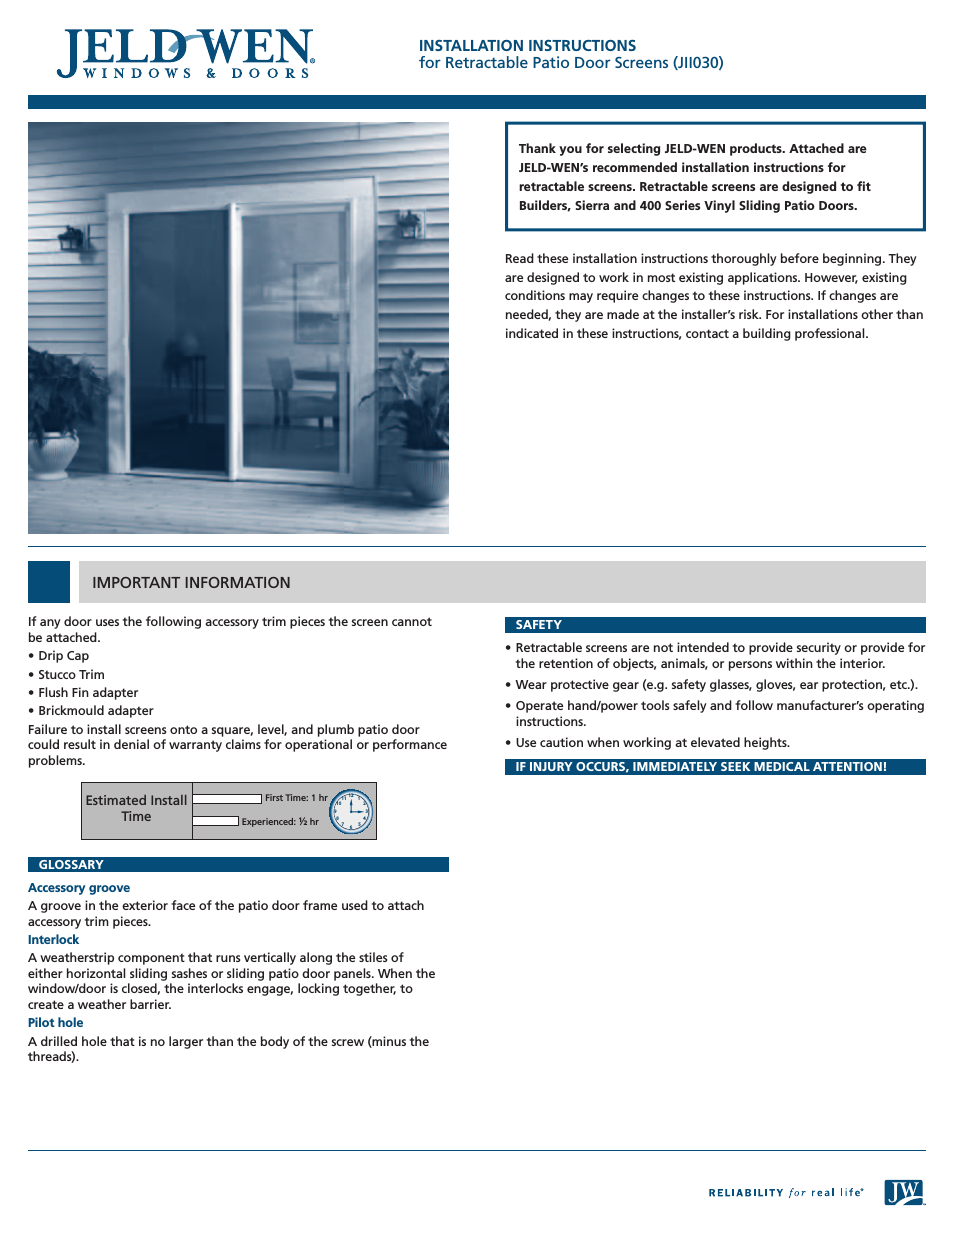 JII030 Retractable Patio Door Screens